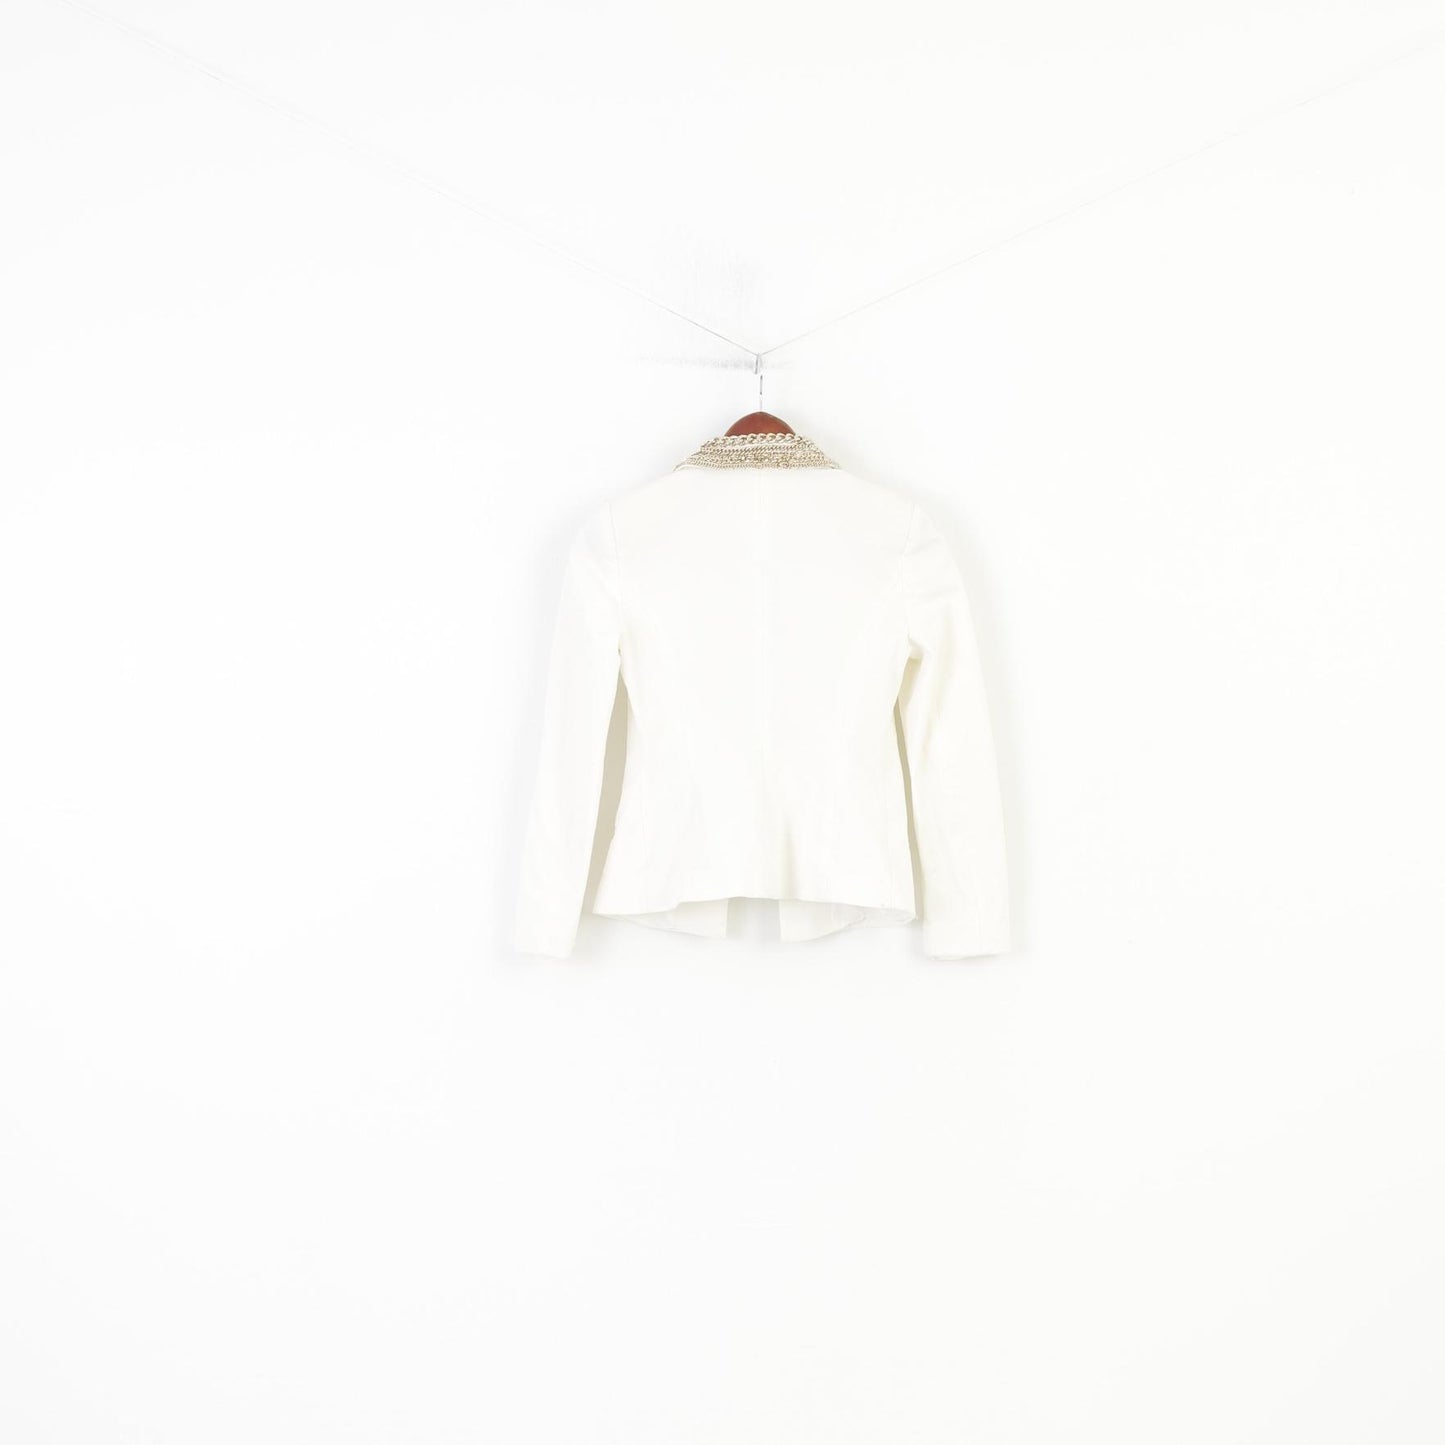 Elisabetta Franchi Woman 42 S Jacket White Shoulder Blazer Pads Decorations Vintage Cotton Top